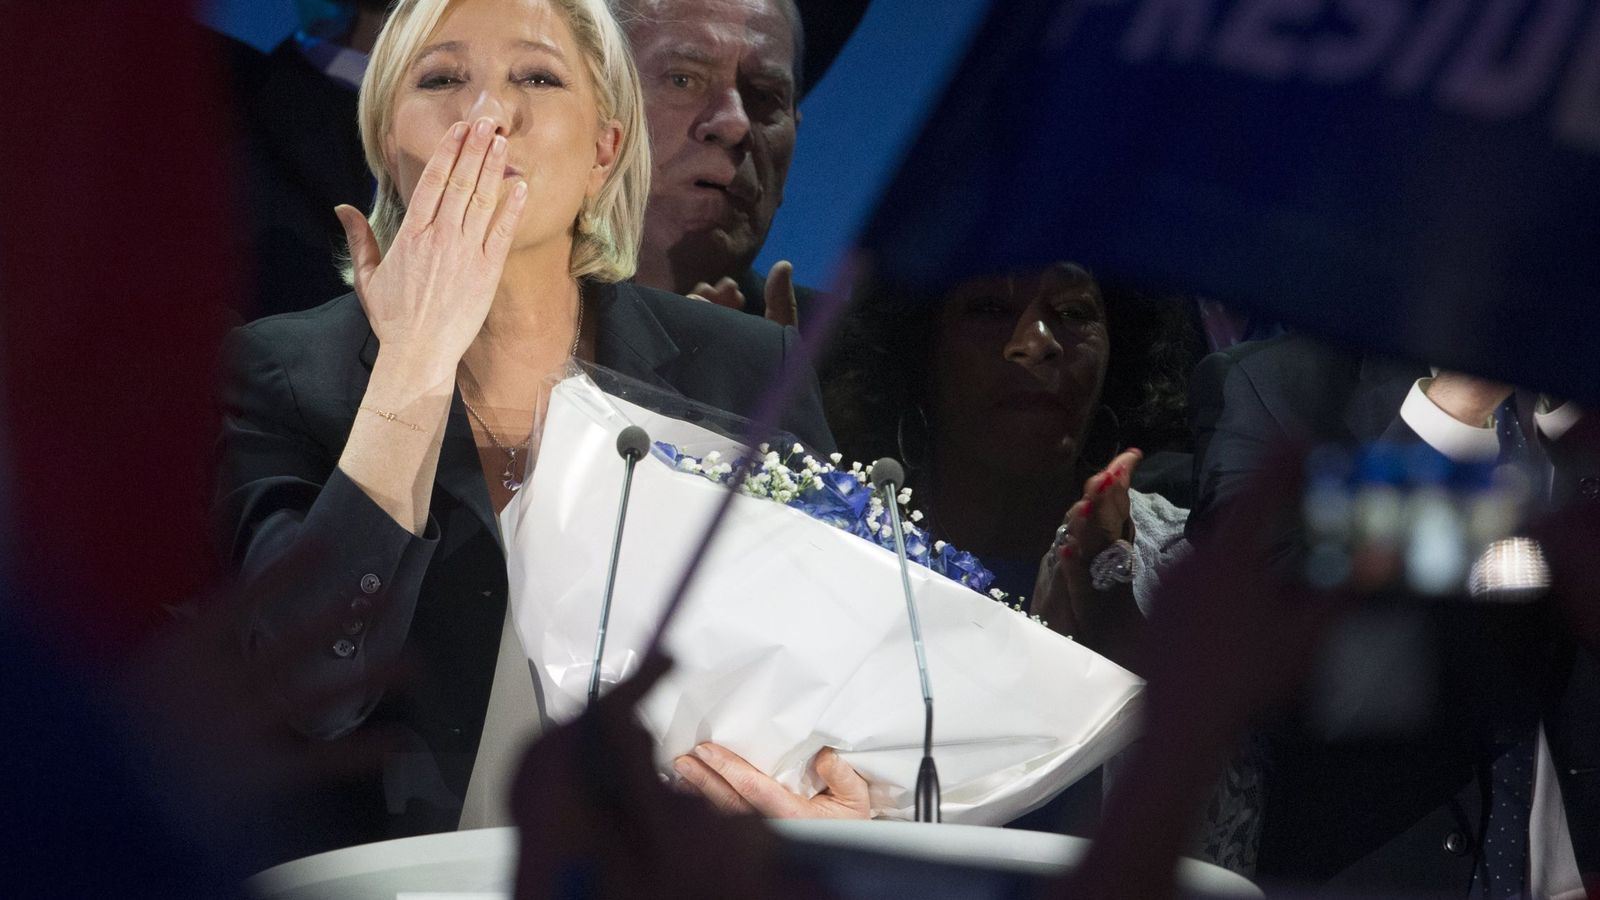 Foto: La líder del Frente Nacional, Marine Le Pen, celebra los resultados obtenidos. (Reuters)